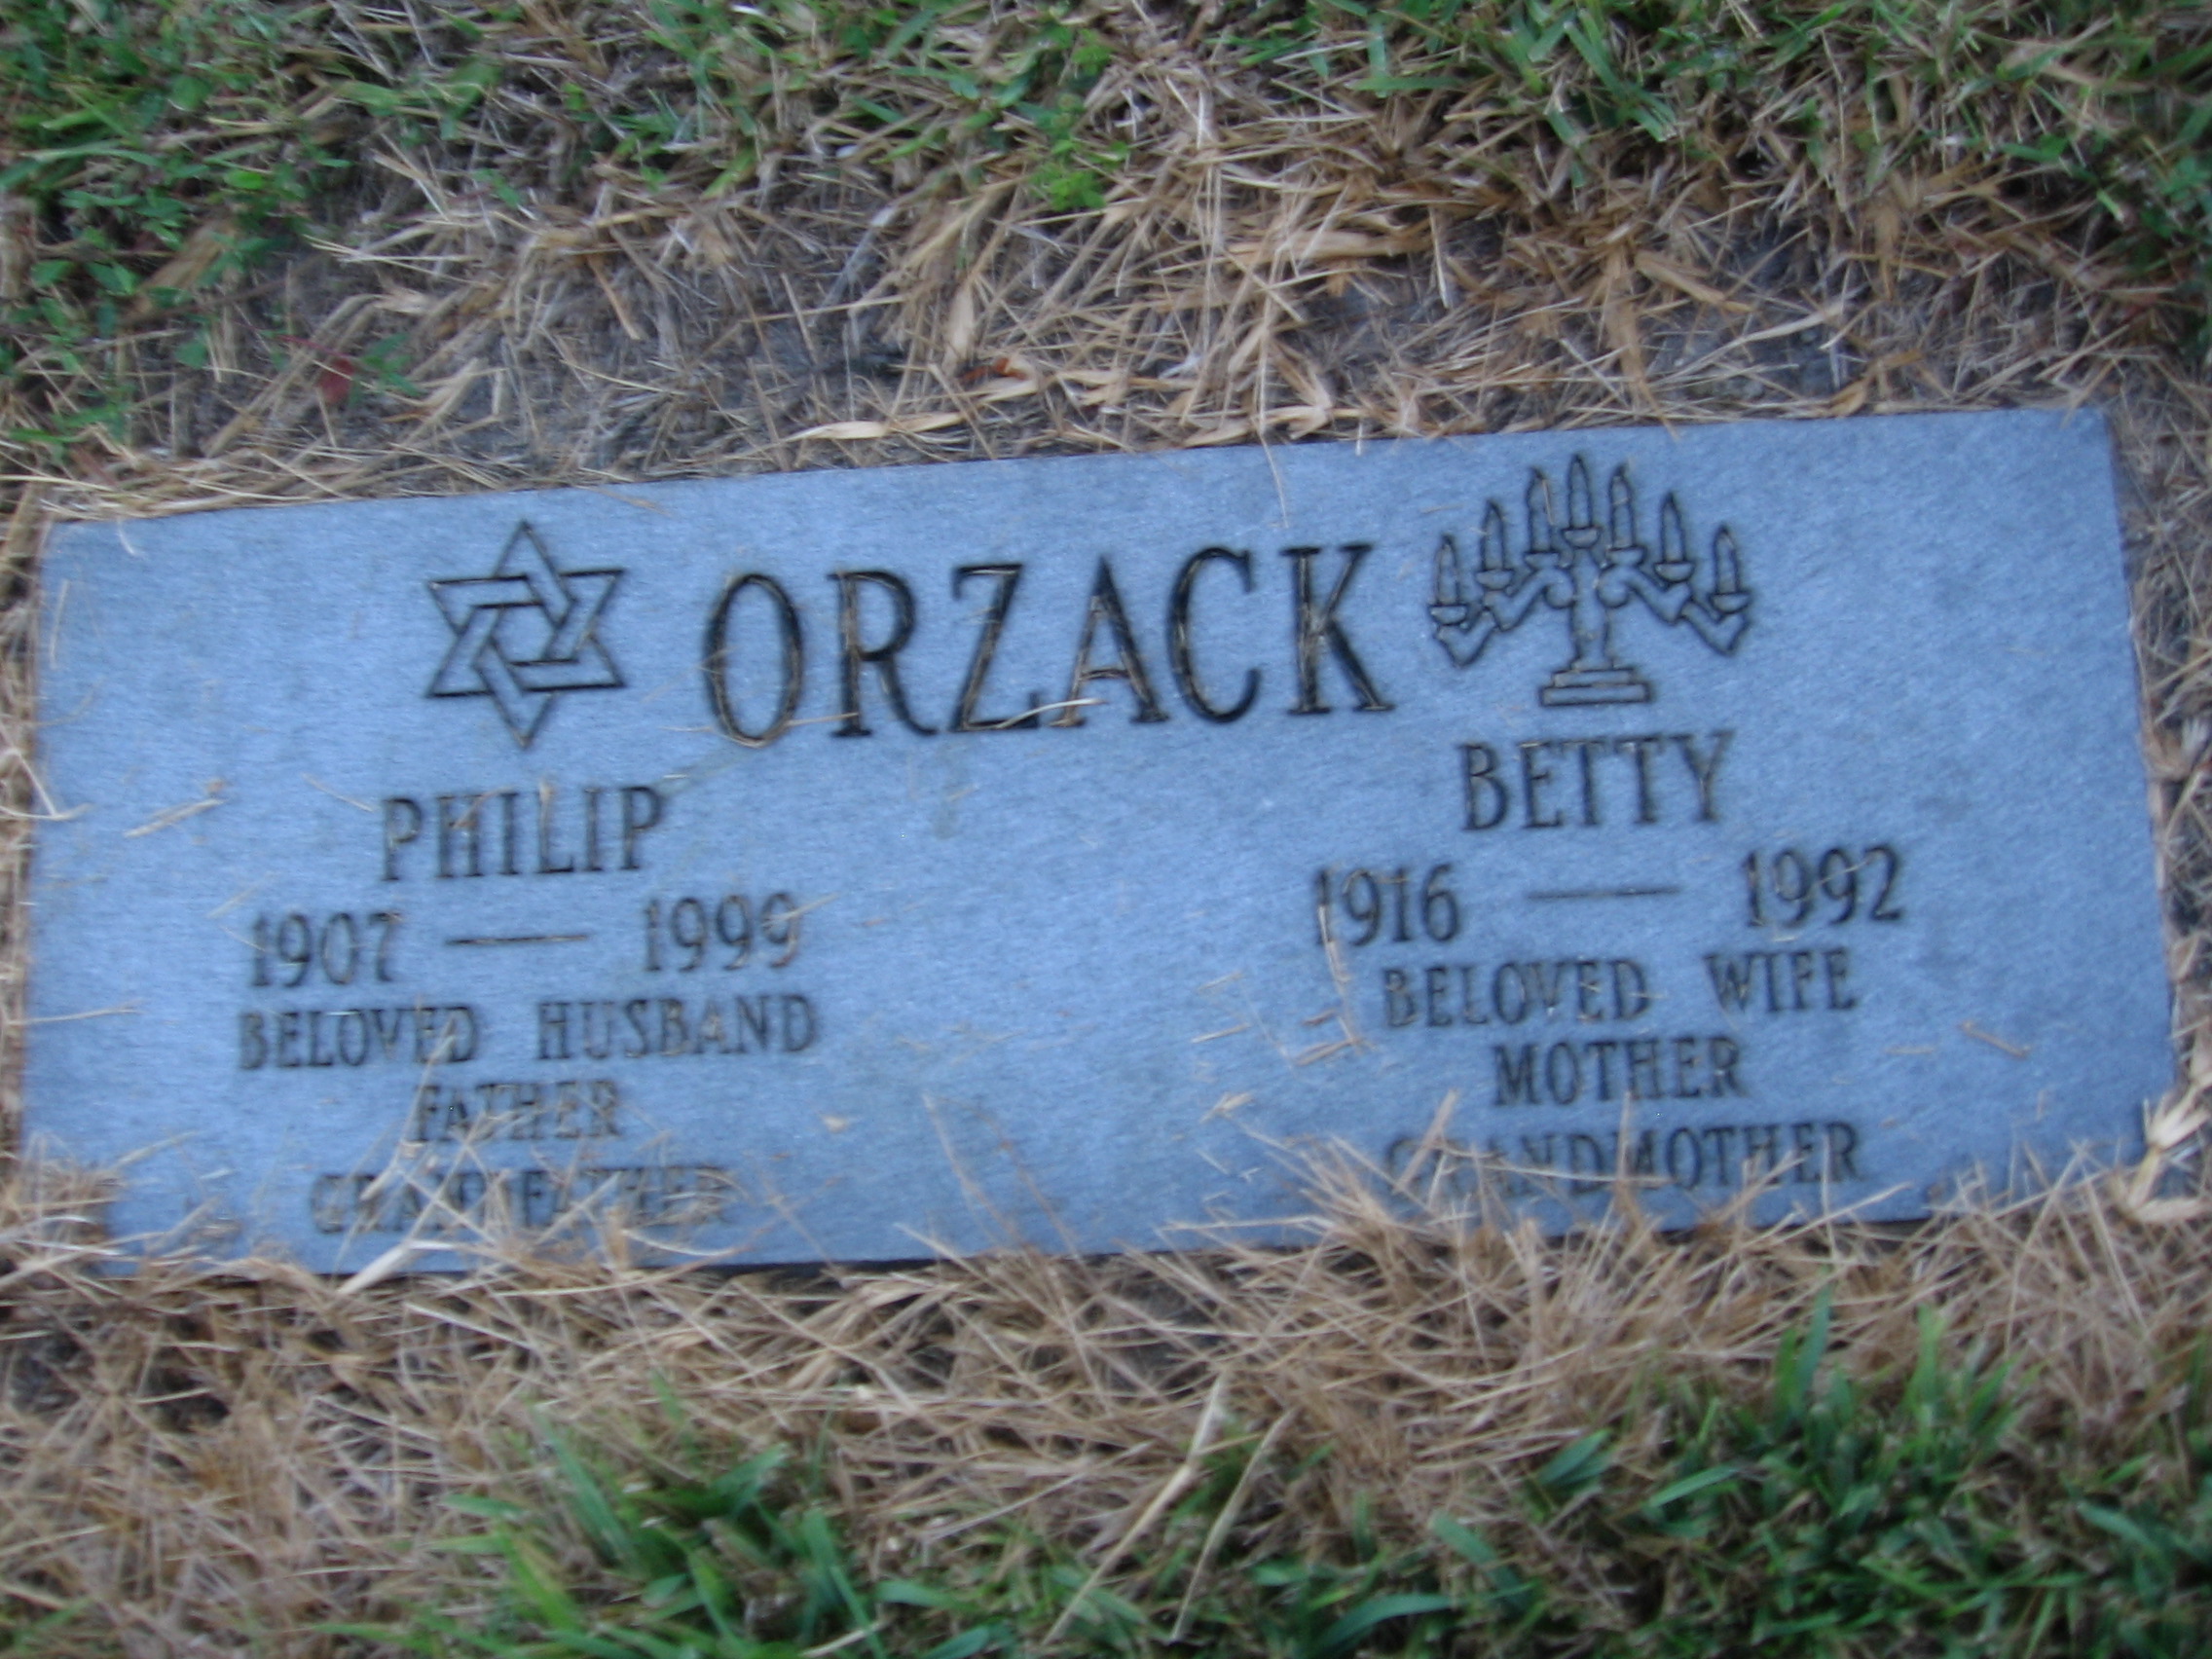 Betty Orzack